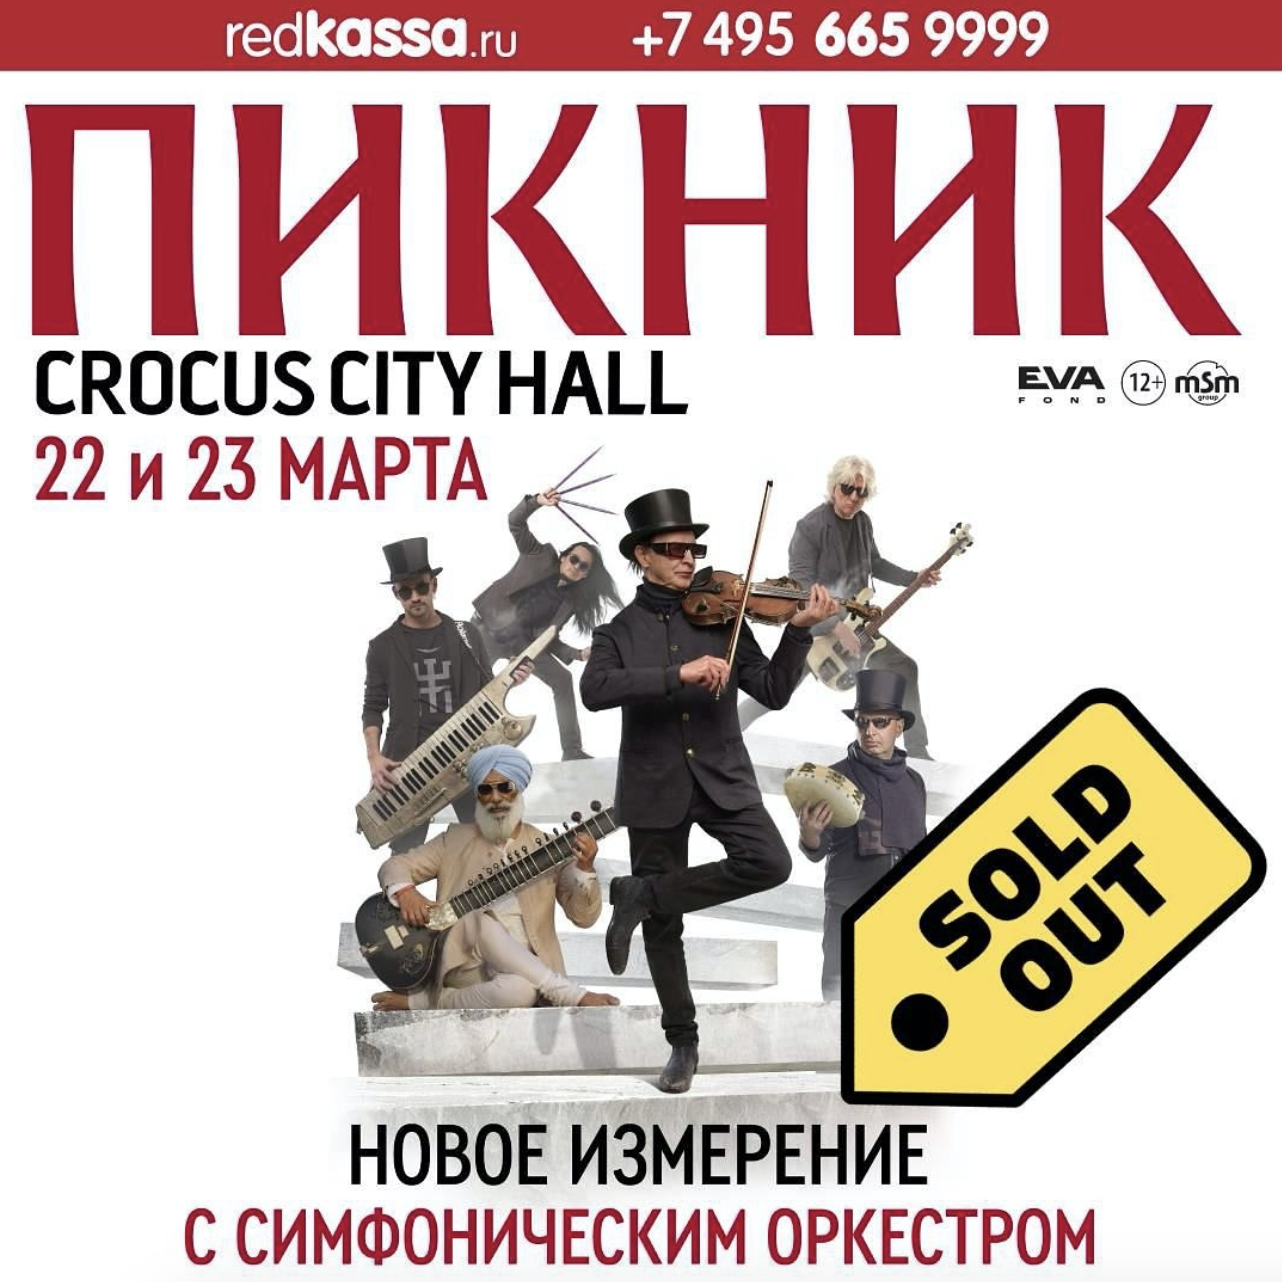 Что известно о группе "Пикник", на концерте которой произошел теракт: выступали в Украине, поддержали войну и потеряли в "Крокусе" участника